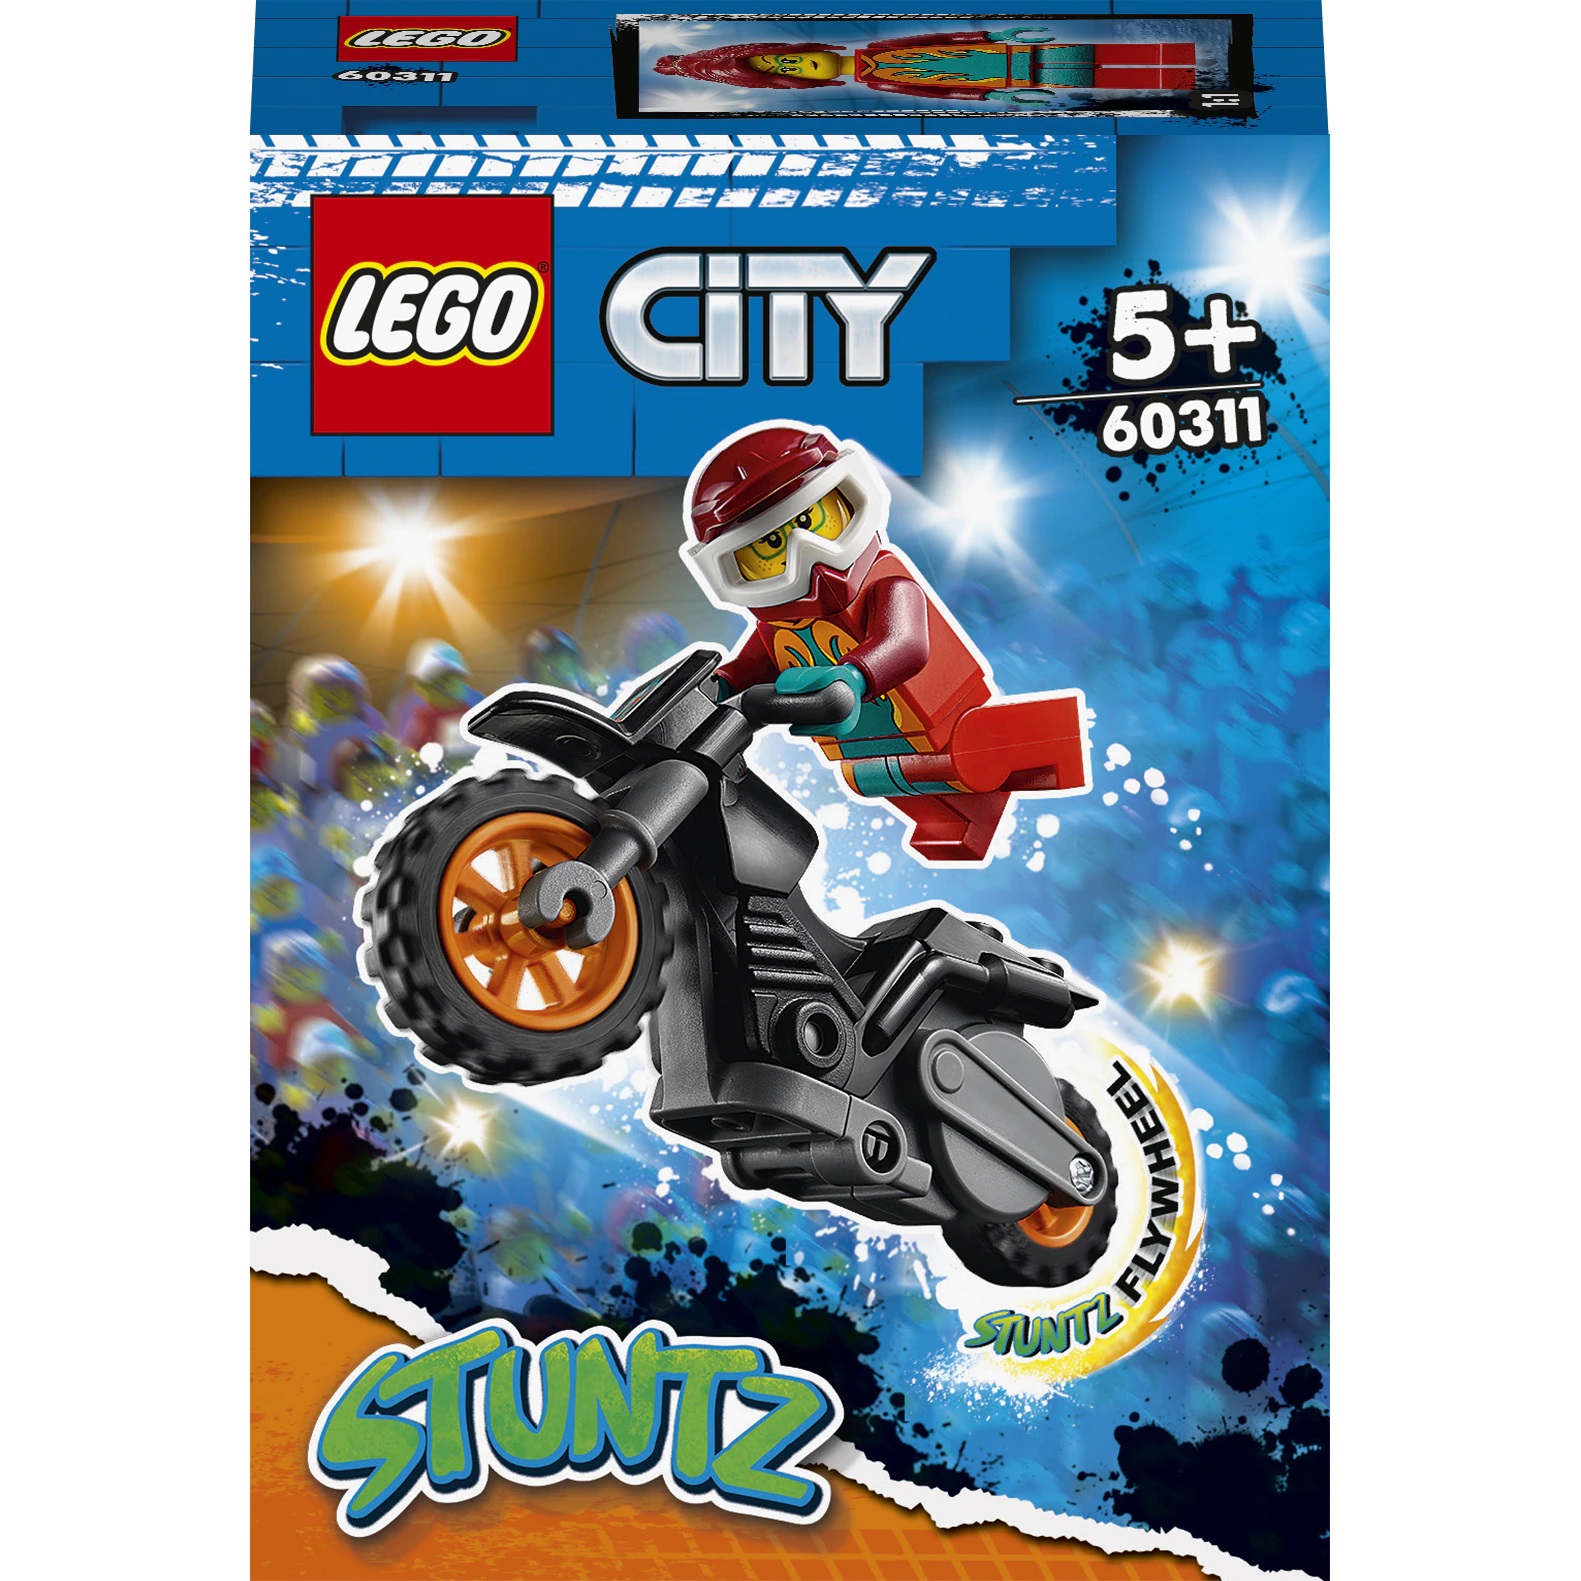 Motocicleta de cascadorie pentru Pompieri Lego City, +5 ani, 60311, Lego